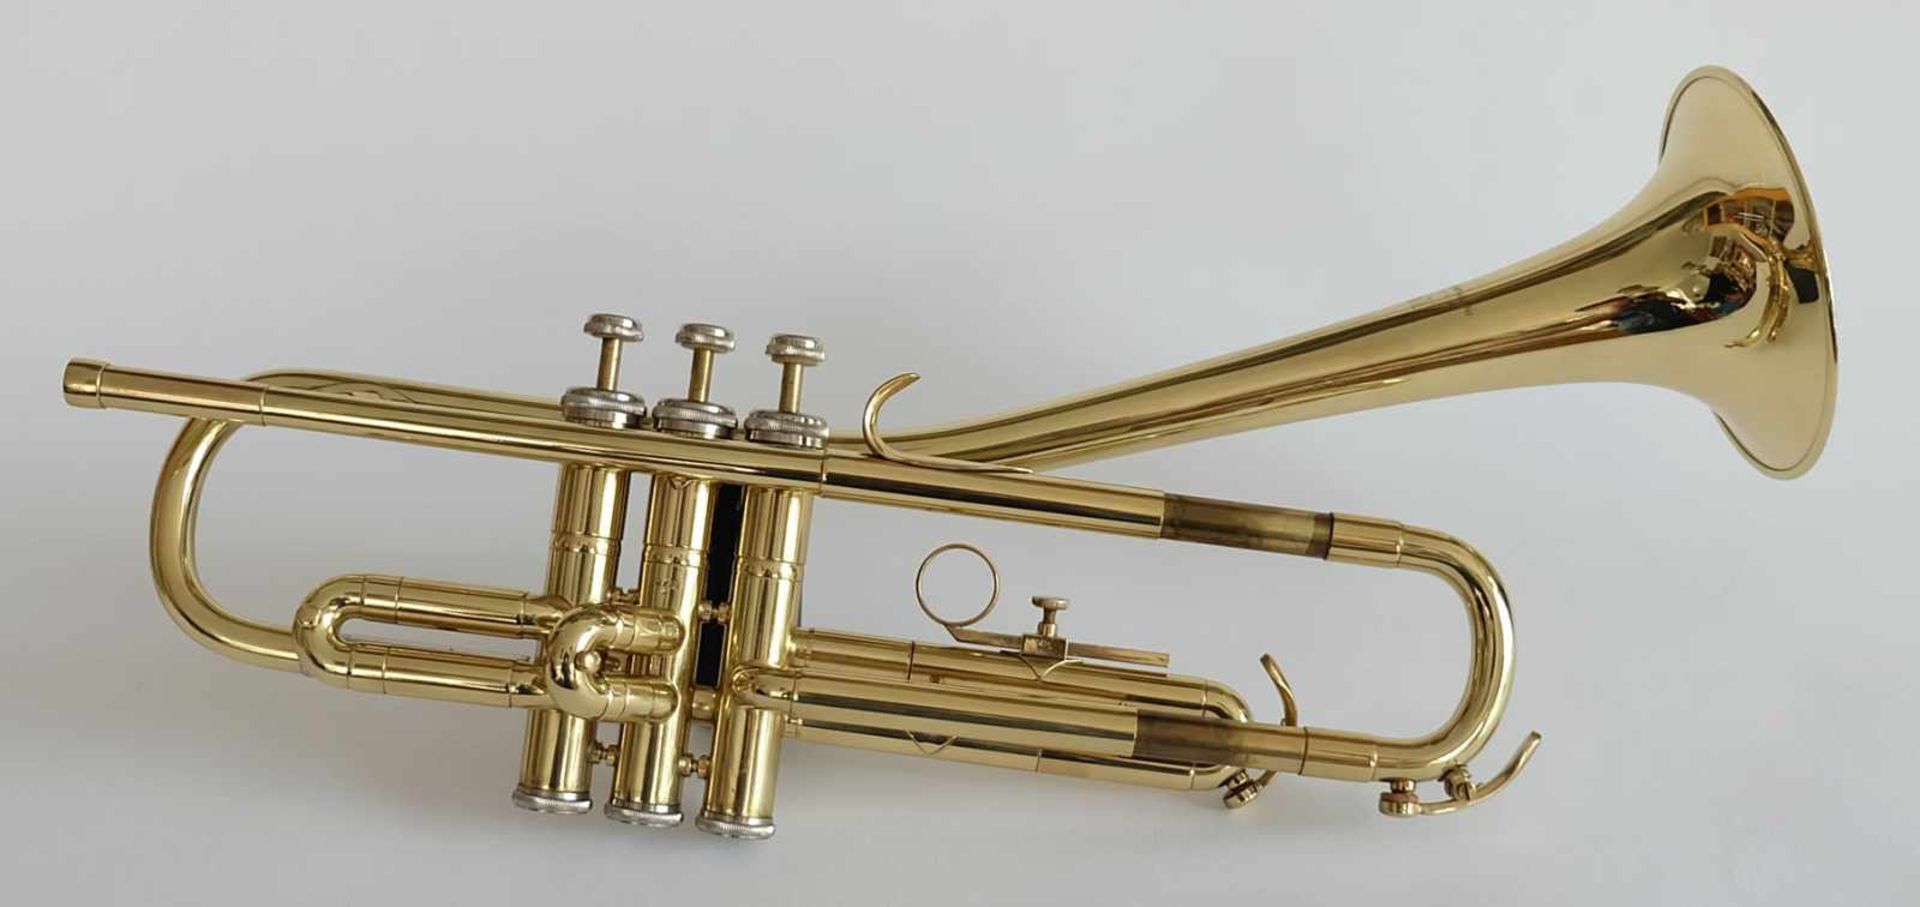 TROMPETE, Hersteller Jupiter K.H.S. Musical Instrument Co. Ltd./ Taipeh, Messing poliert, Tasten mit